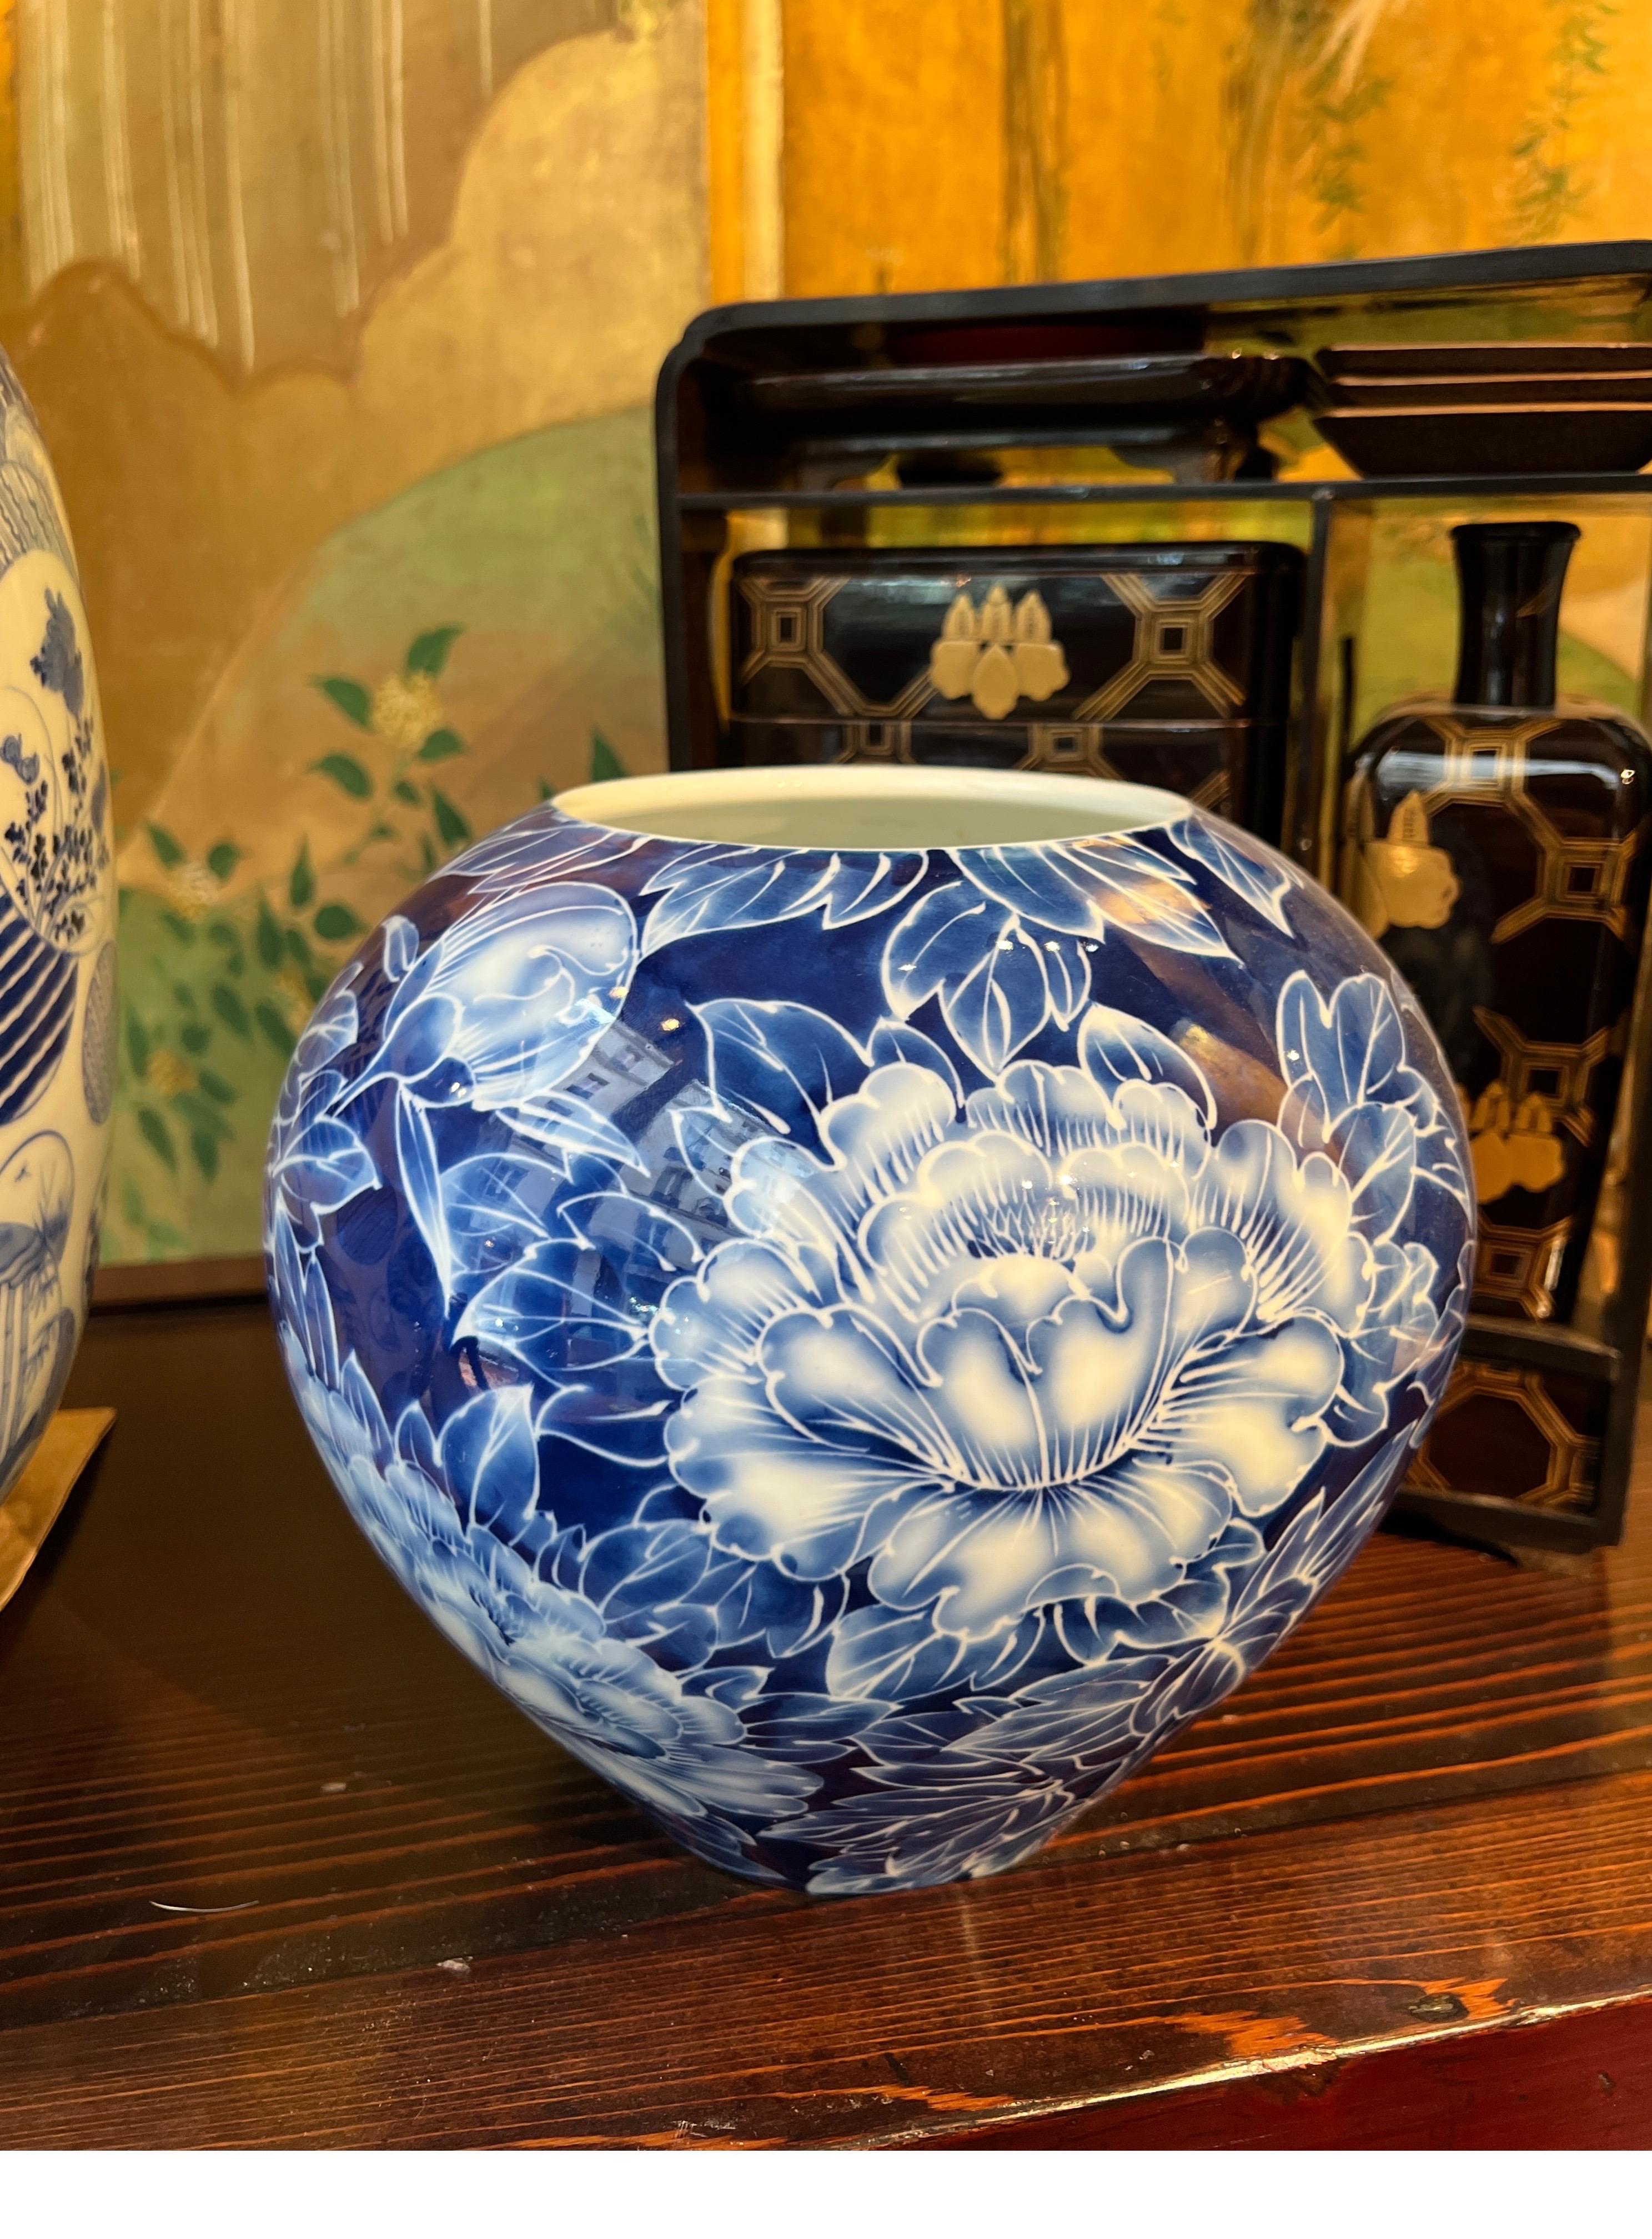 Eine atemberaubende japanische  Vase aus Porzellan in leuchtenden Blautönen, verziert mit  exquisite Pfingstrosenmotive.
 Diese kugelförmige Vase besticht durch ihre sorgfältige Handbemalung, die ihren Reiz als dekoratives Stück noch verstärkt.

